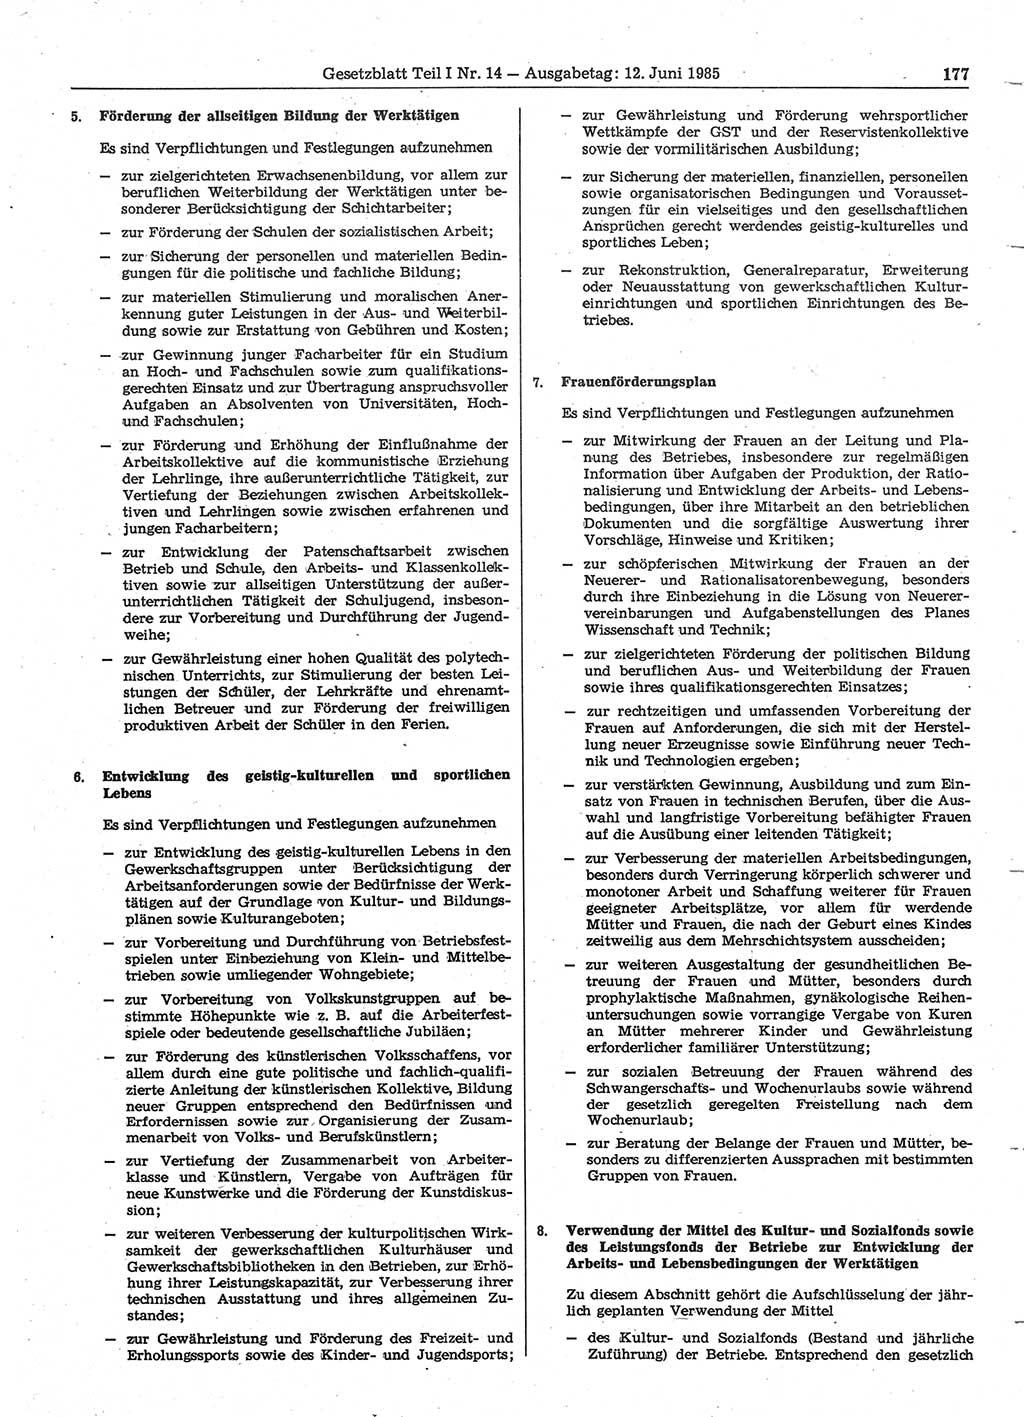 Gesetzblatt (GBl.) der Deutschen Demokratischen Republik (DDR) Teil Ⅰ 1985, Seite 177 (GBl. DDR Ⅰ 1985, S. 177)